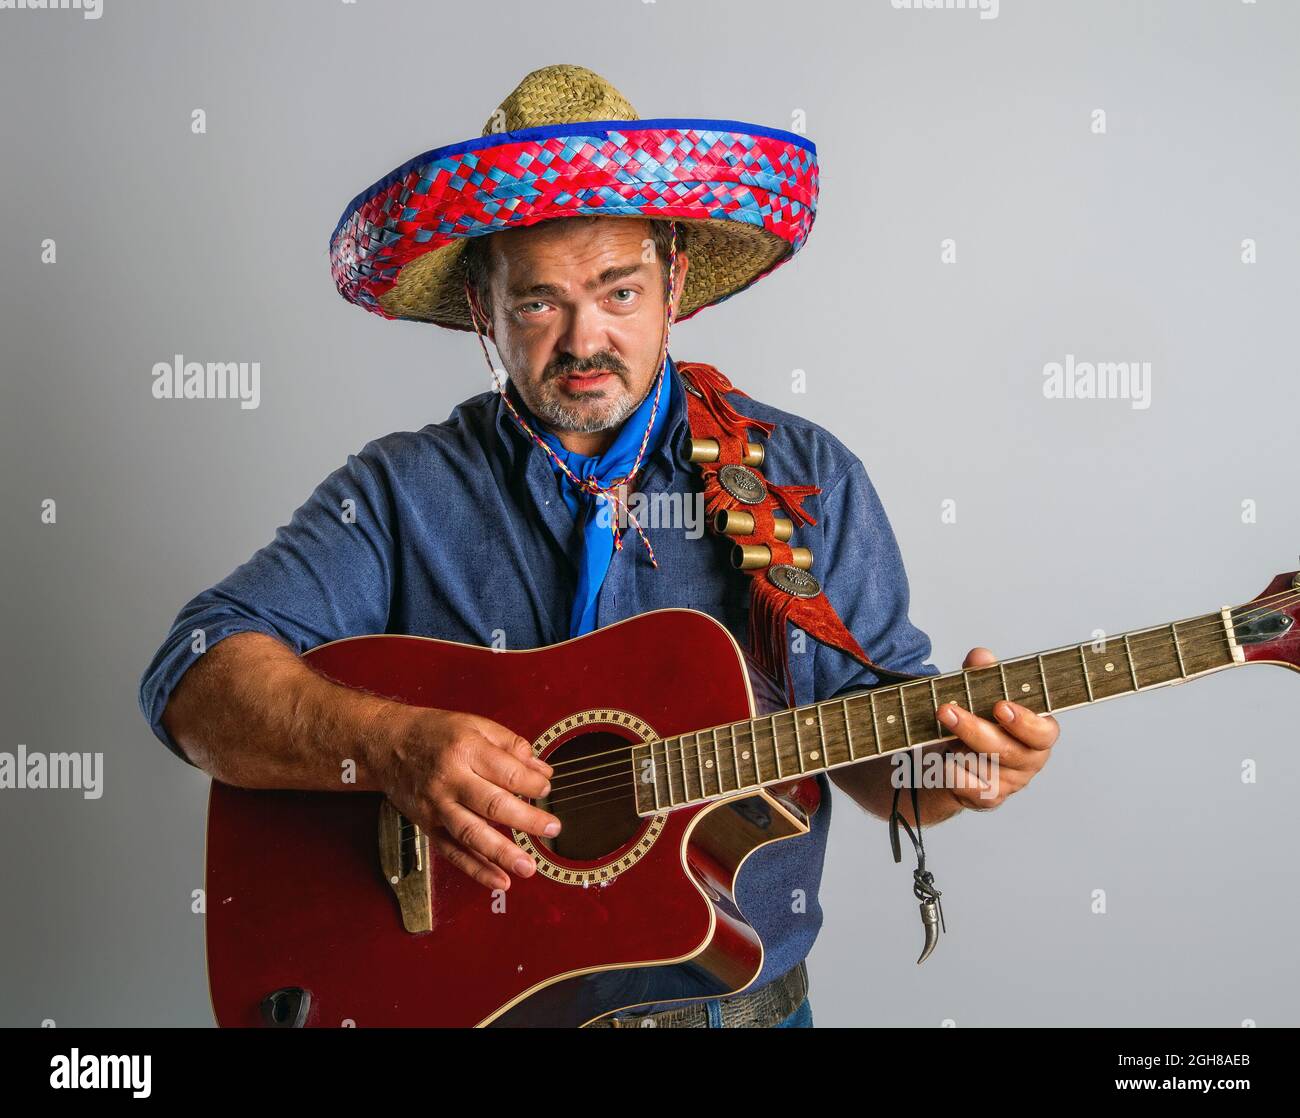 Un homme mexicain émotif adulte dans la hauteur nationale de sombrero joue de la guitare sur fond gris Banque D'Images